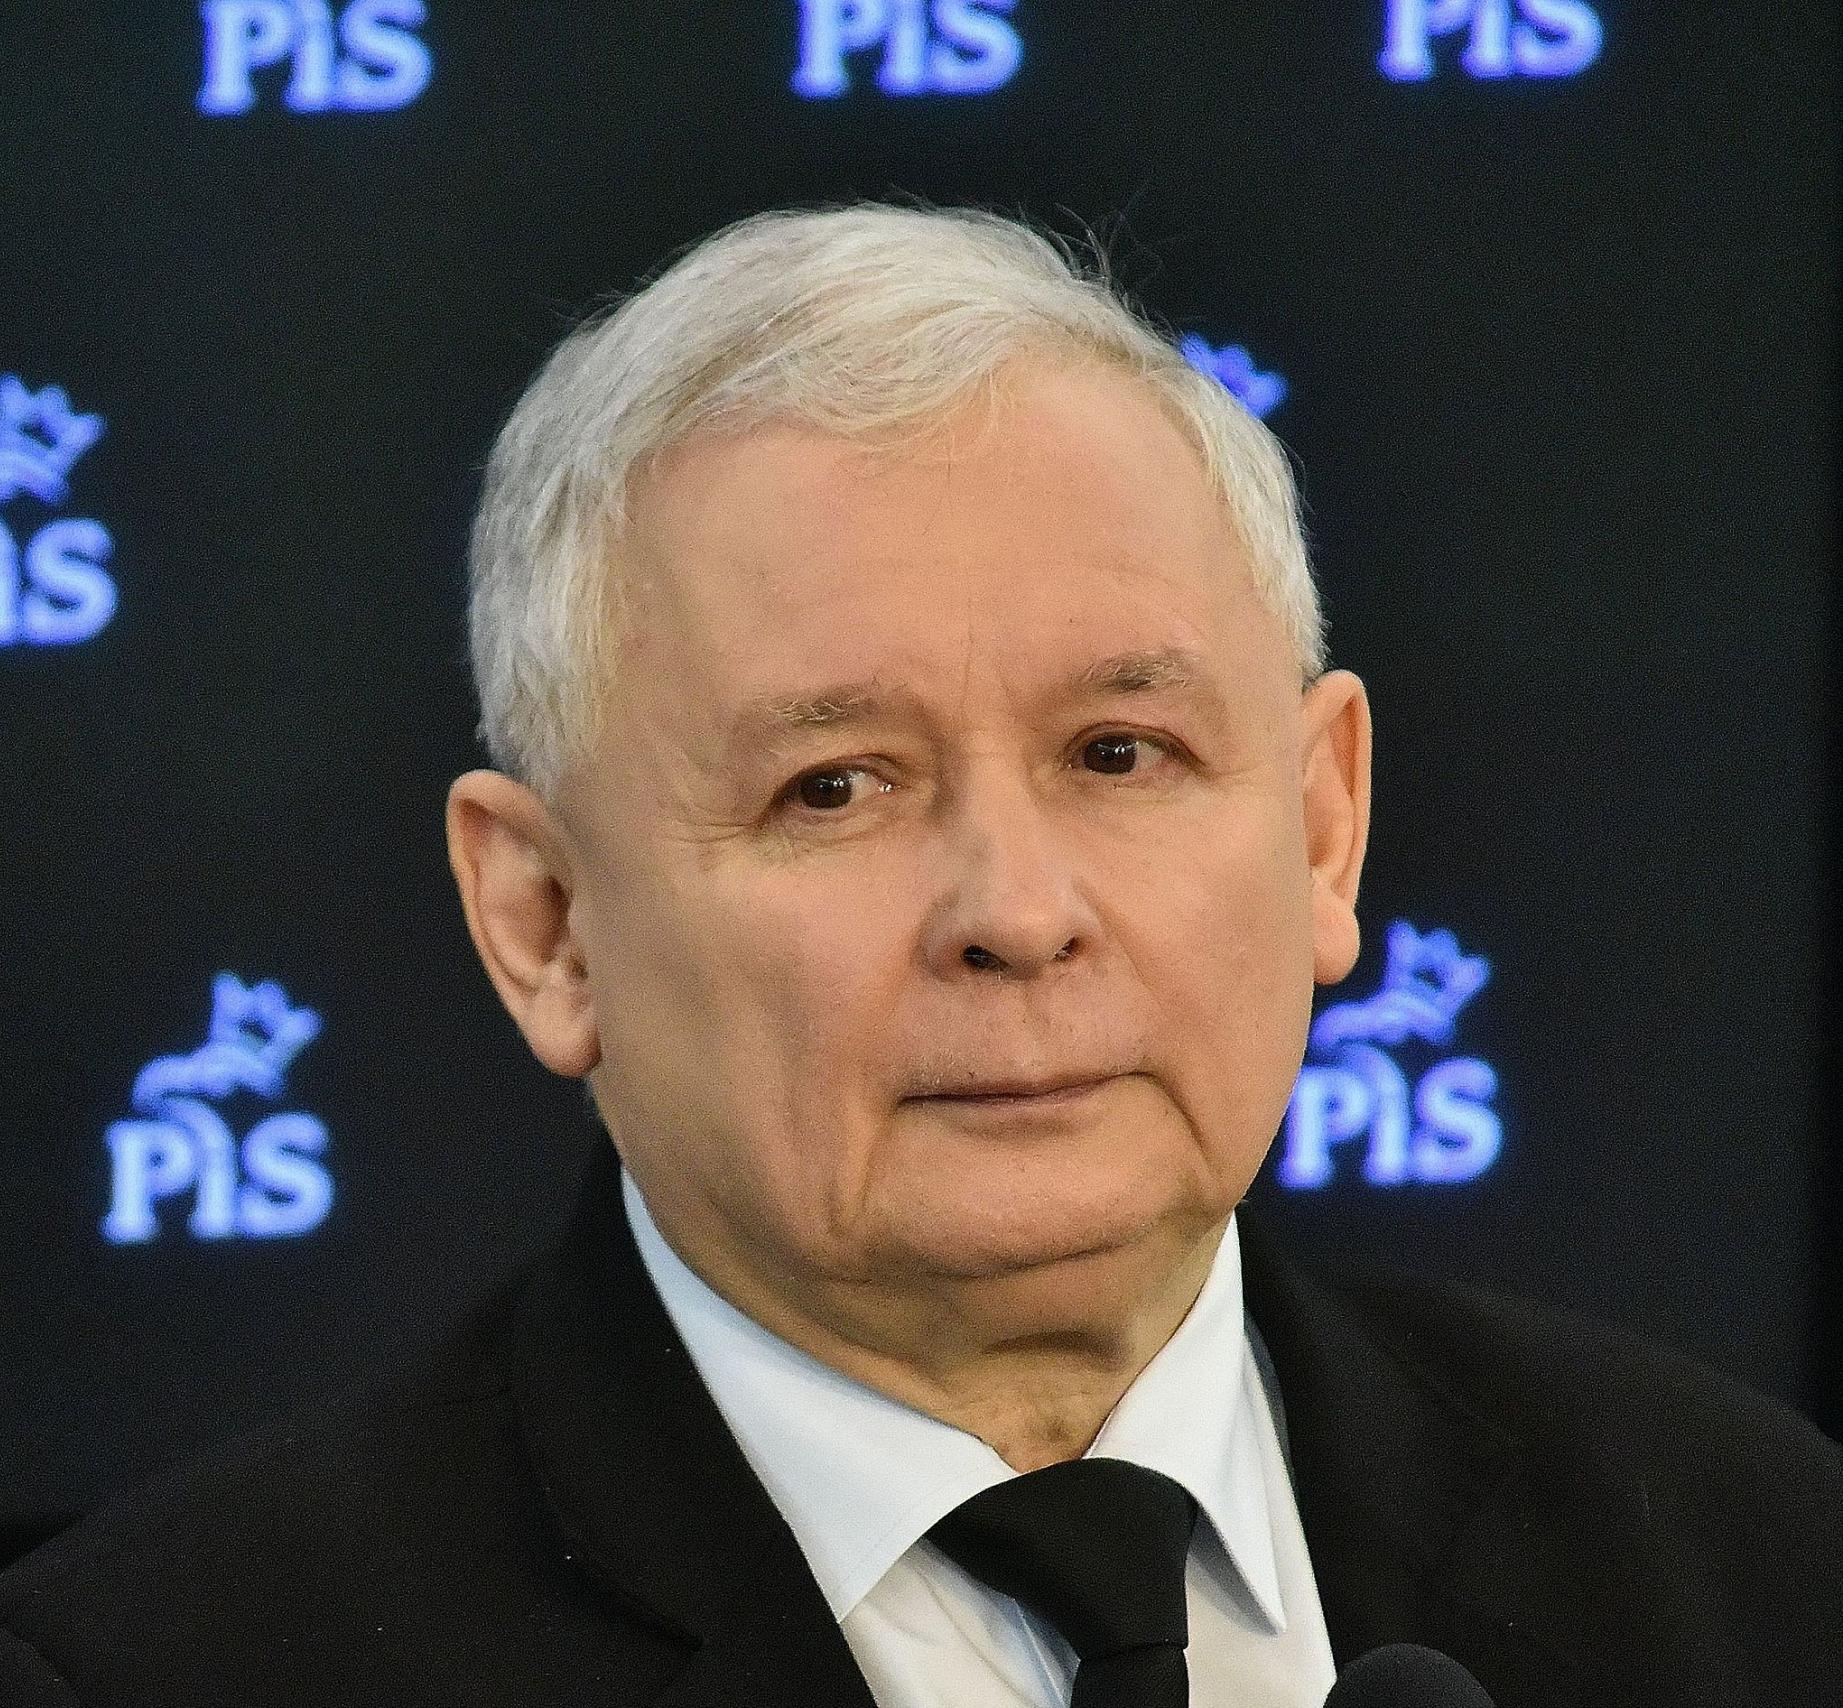 Jarosław Kaczyński ist Vorsitzender der rechtskonservativen Partei PiS und einer der einflussreichsten Politiker des Landes. 